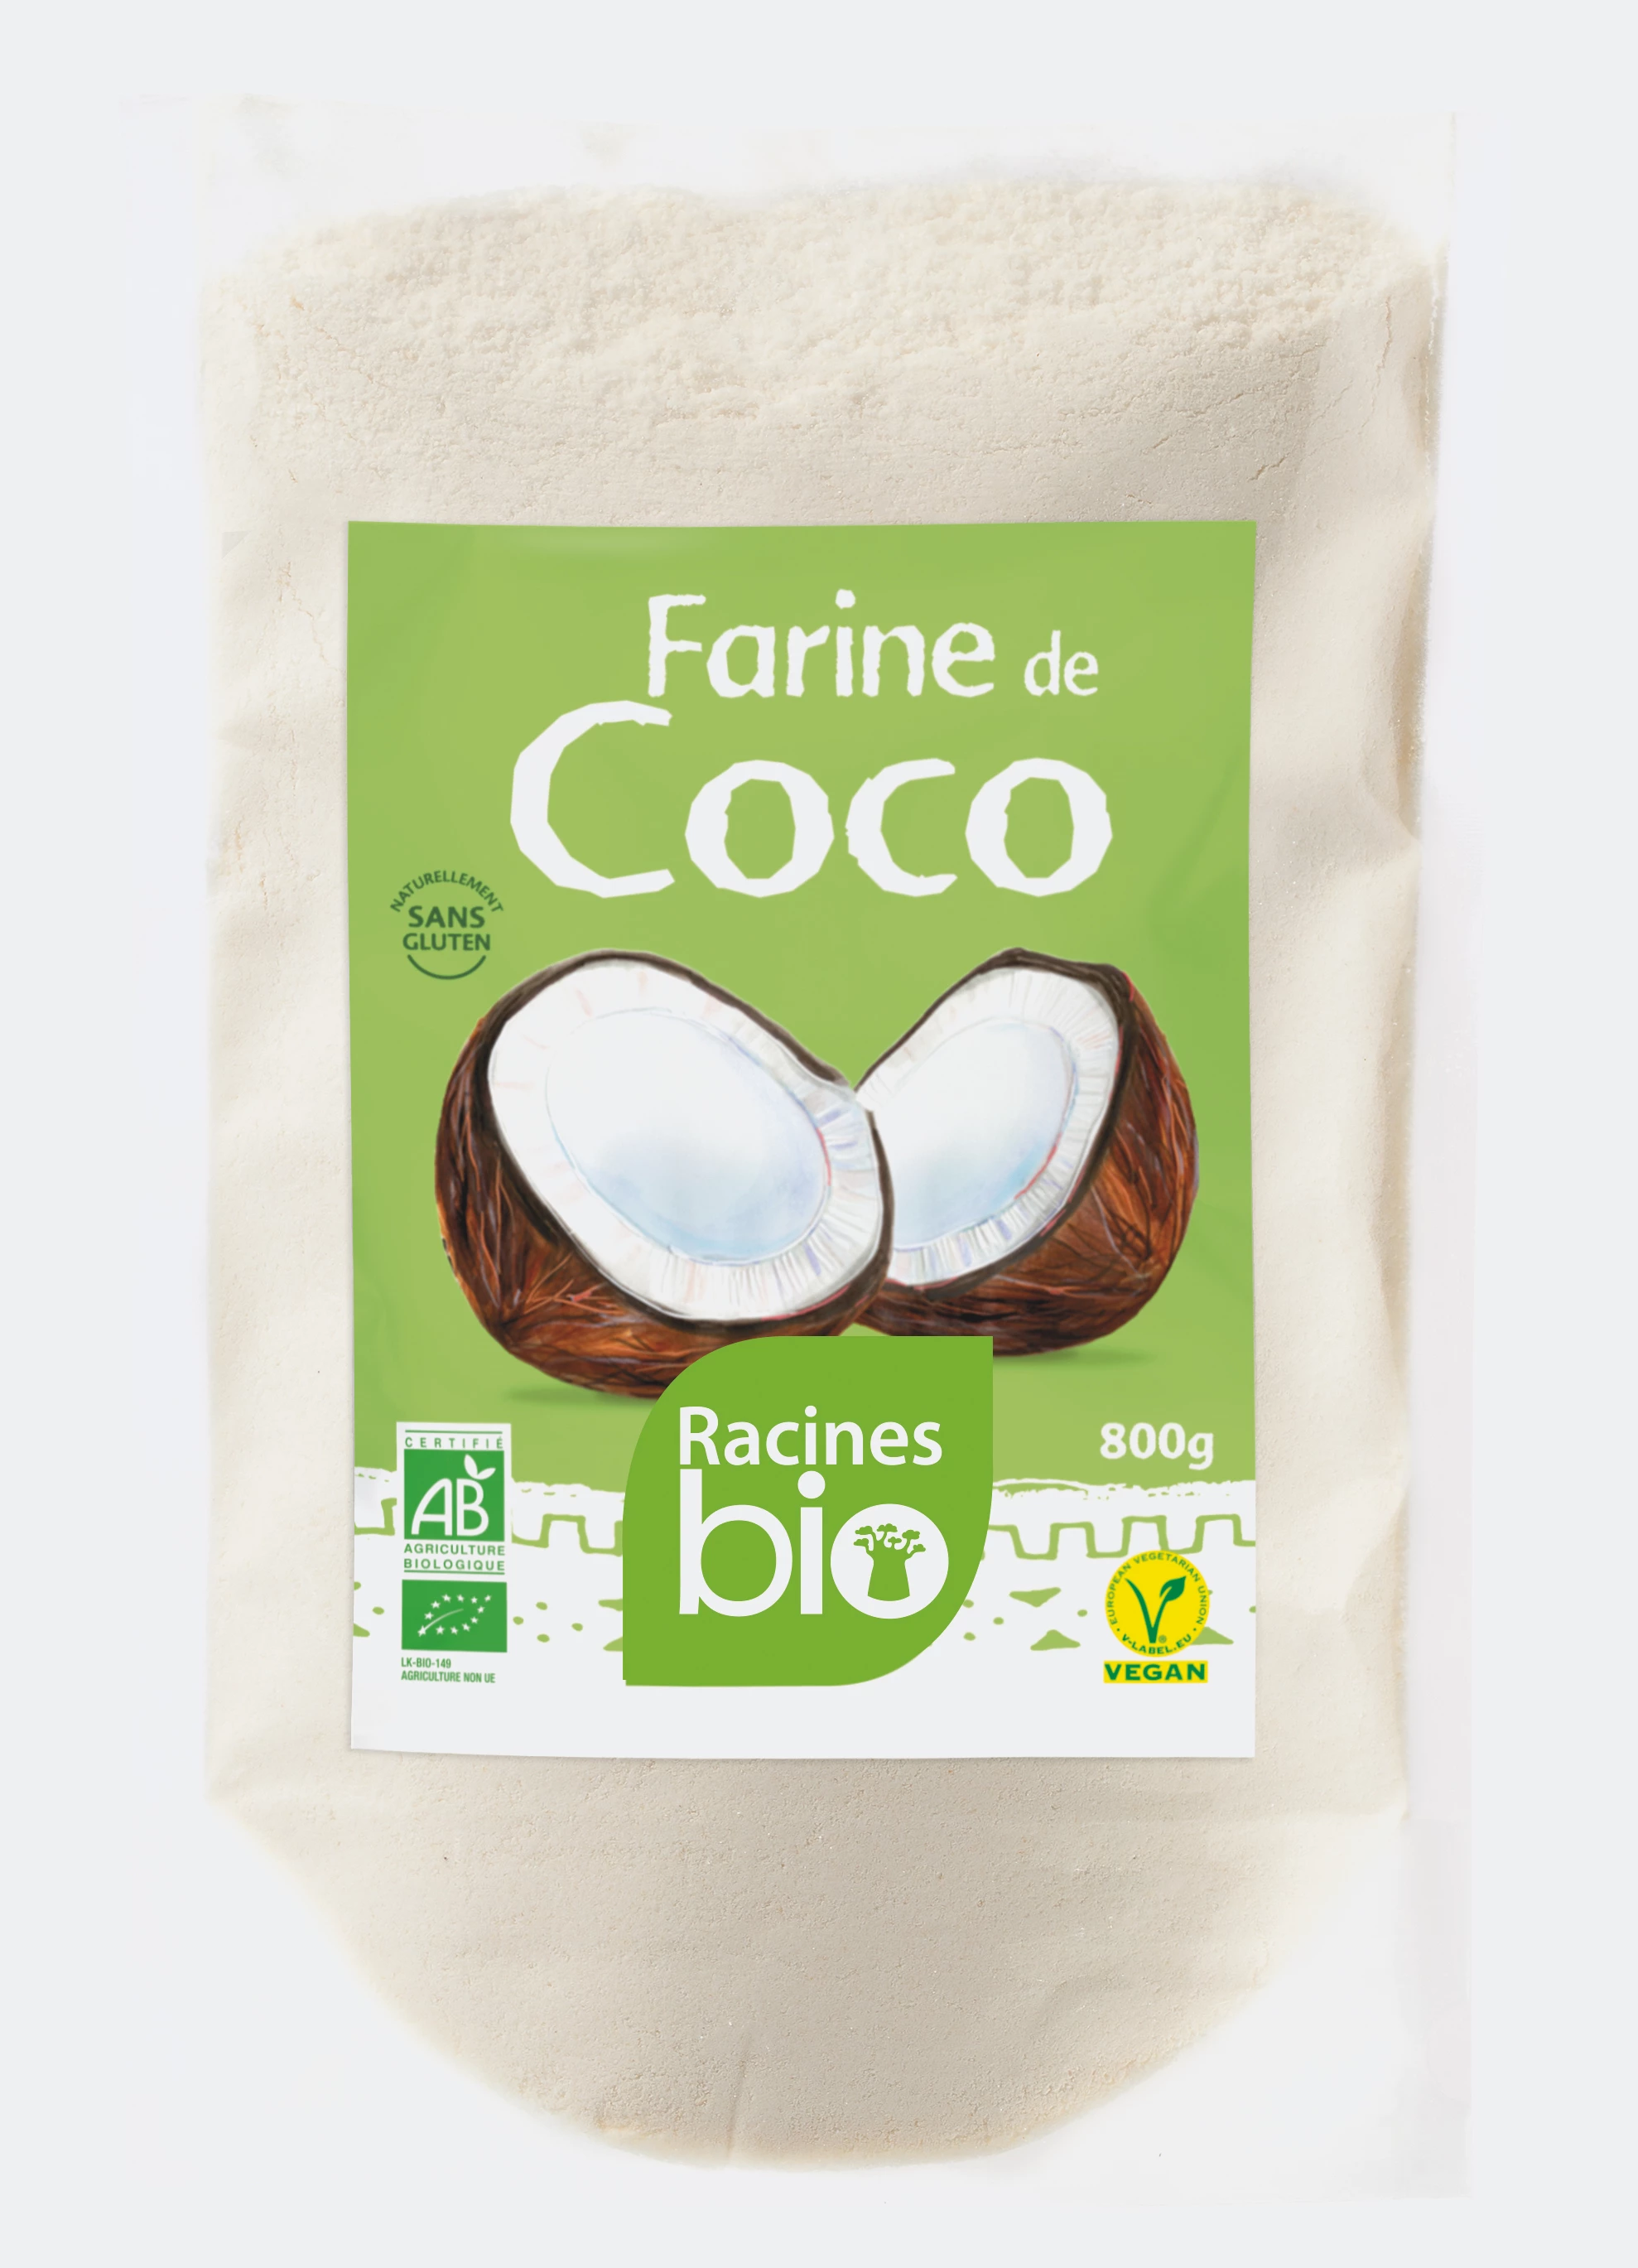 Farinha de Coco (10 X 800 G) - Racines Bio